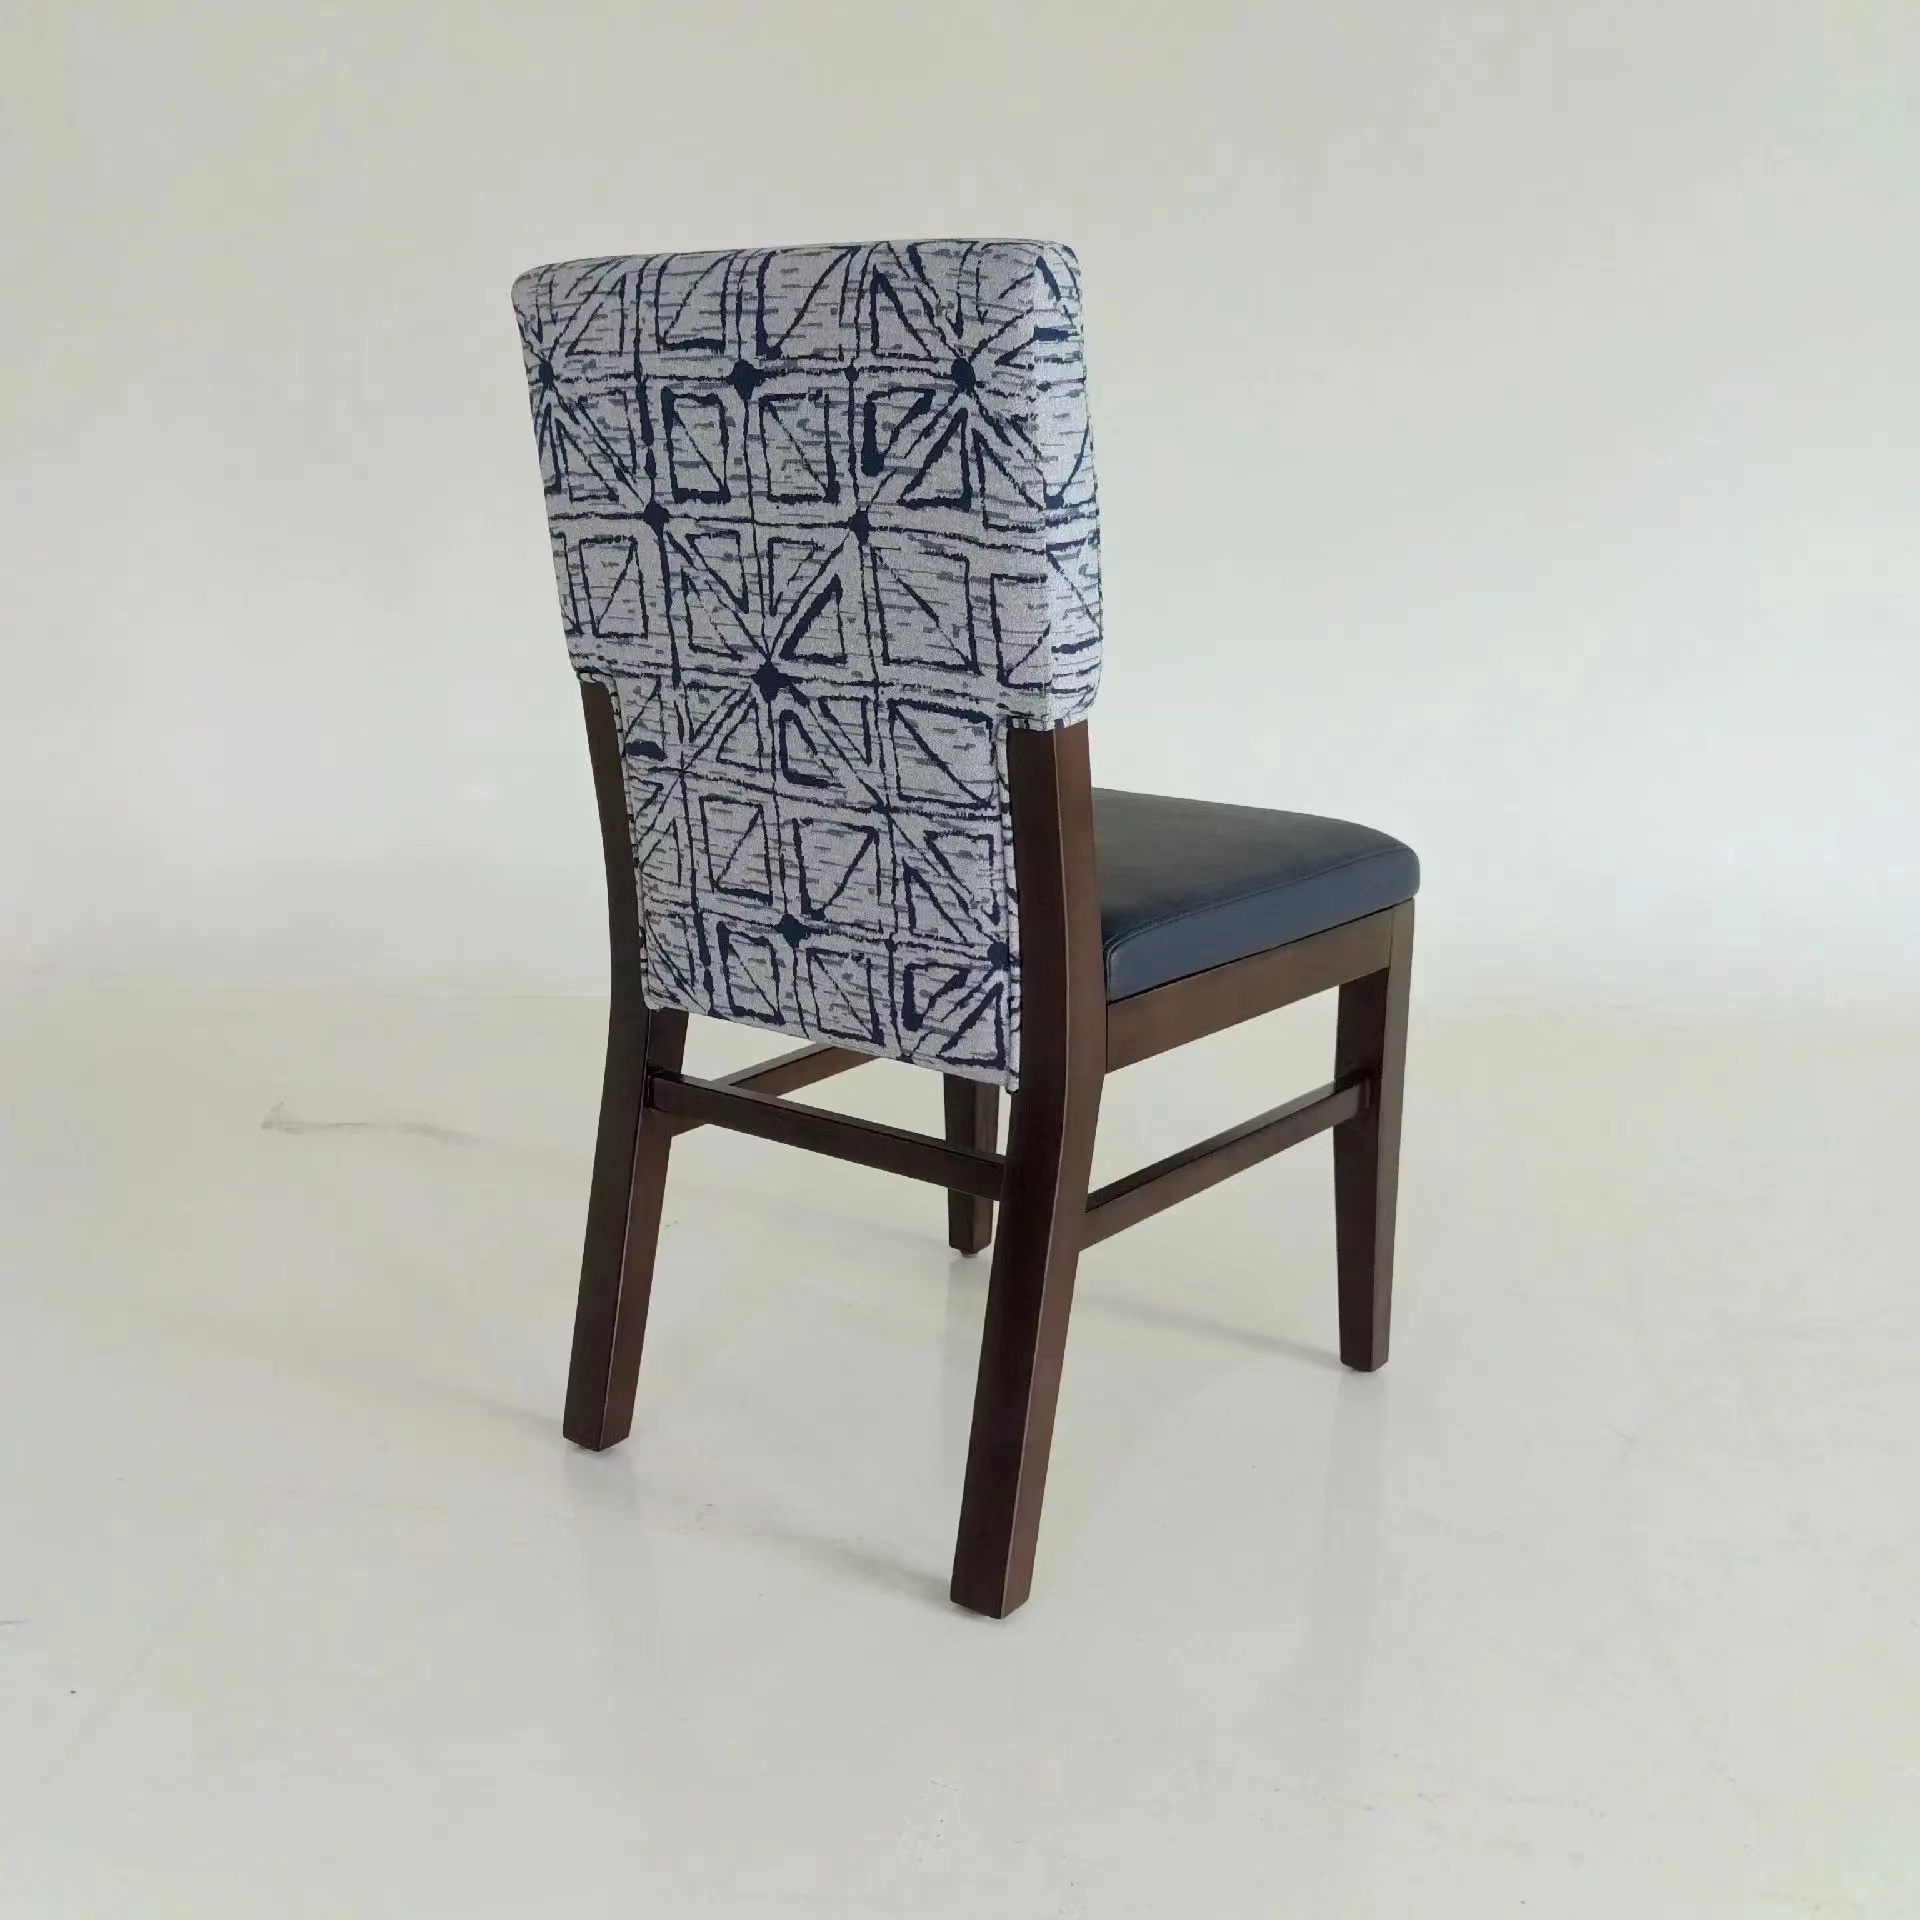 沙发椅子在仁力的结合实际情况的制作下给客户不同的尝试